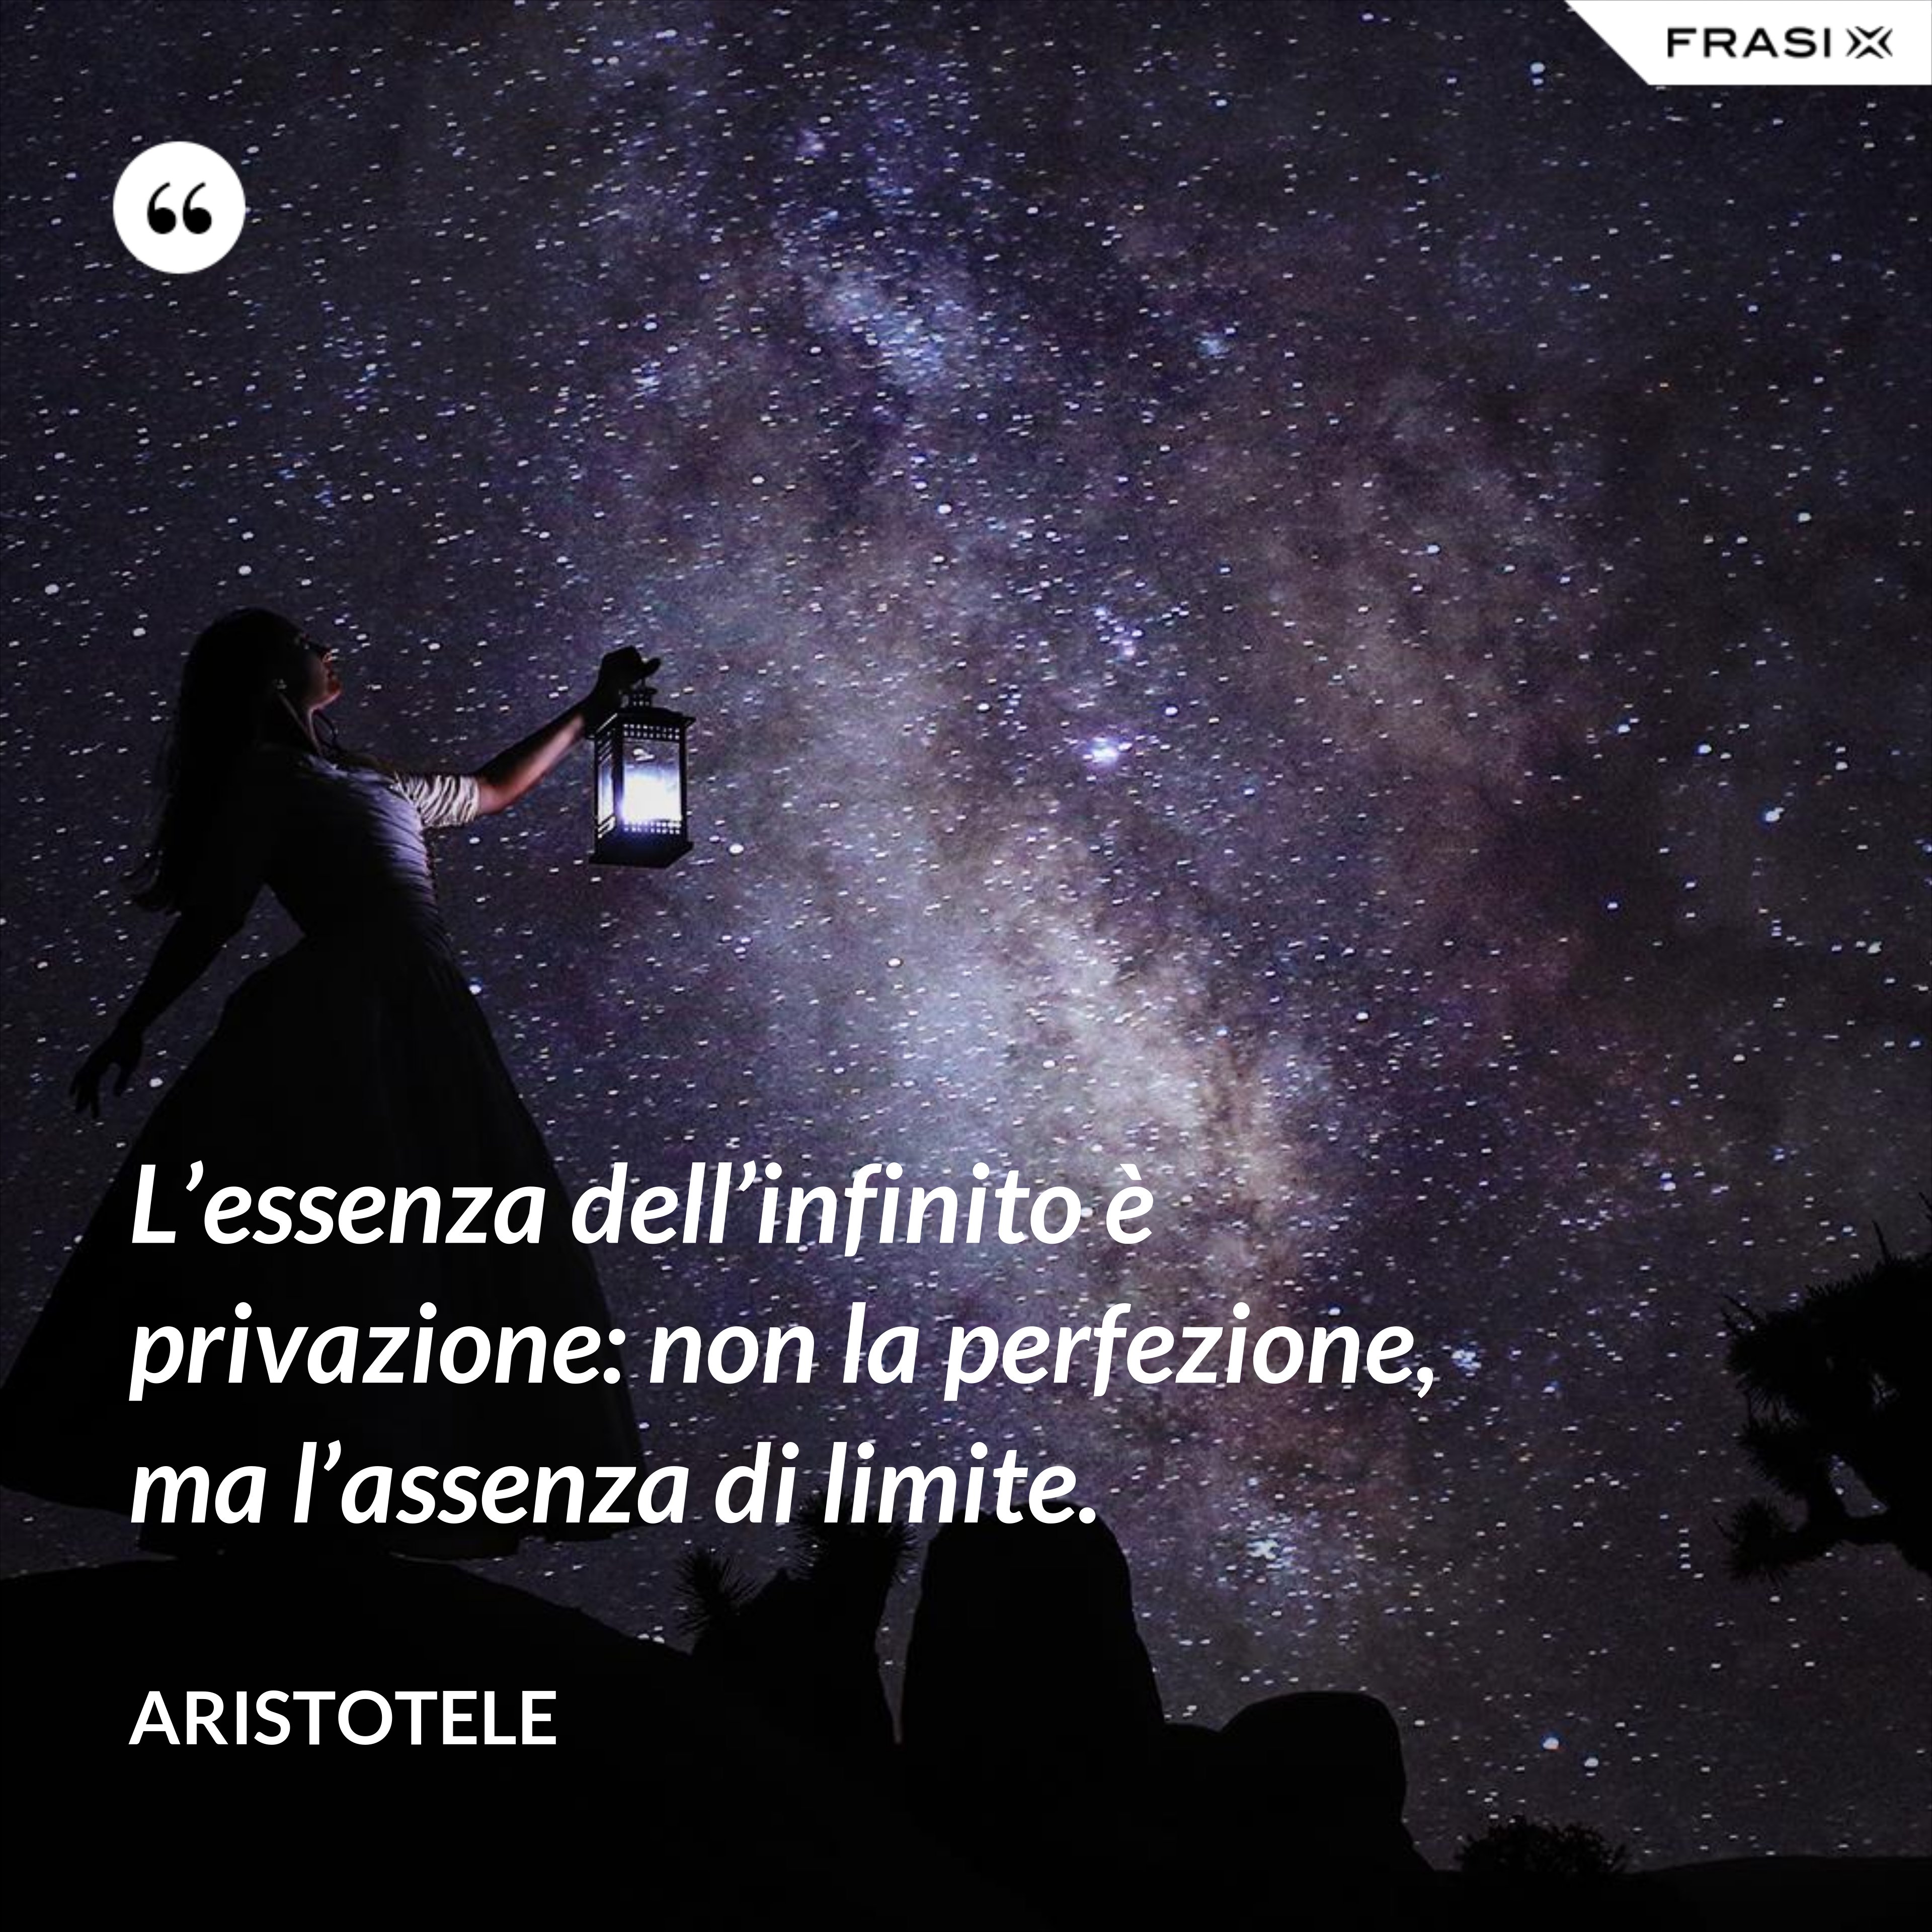 L’essenza dell’infinito è privazione: non la perfezione, ma l’assenza di limite. - Aristotele